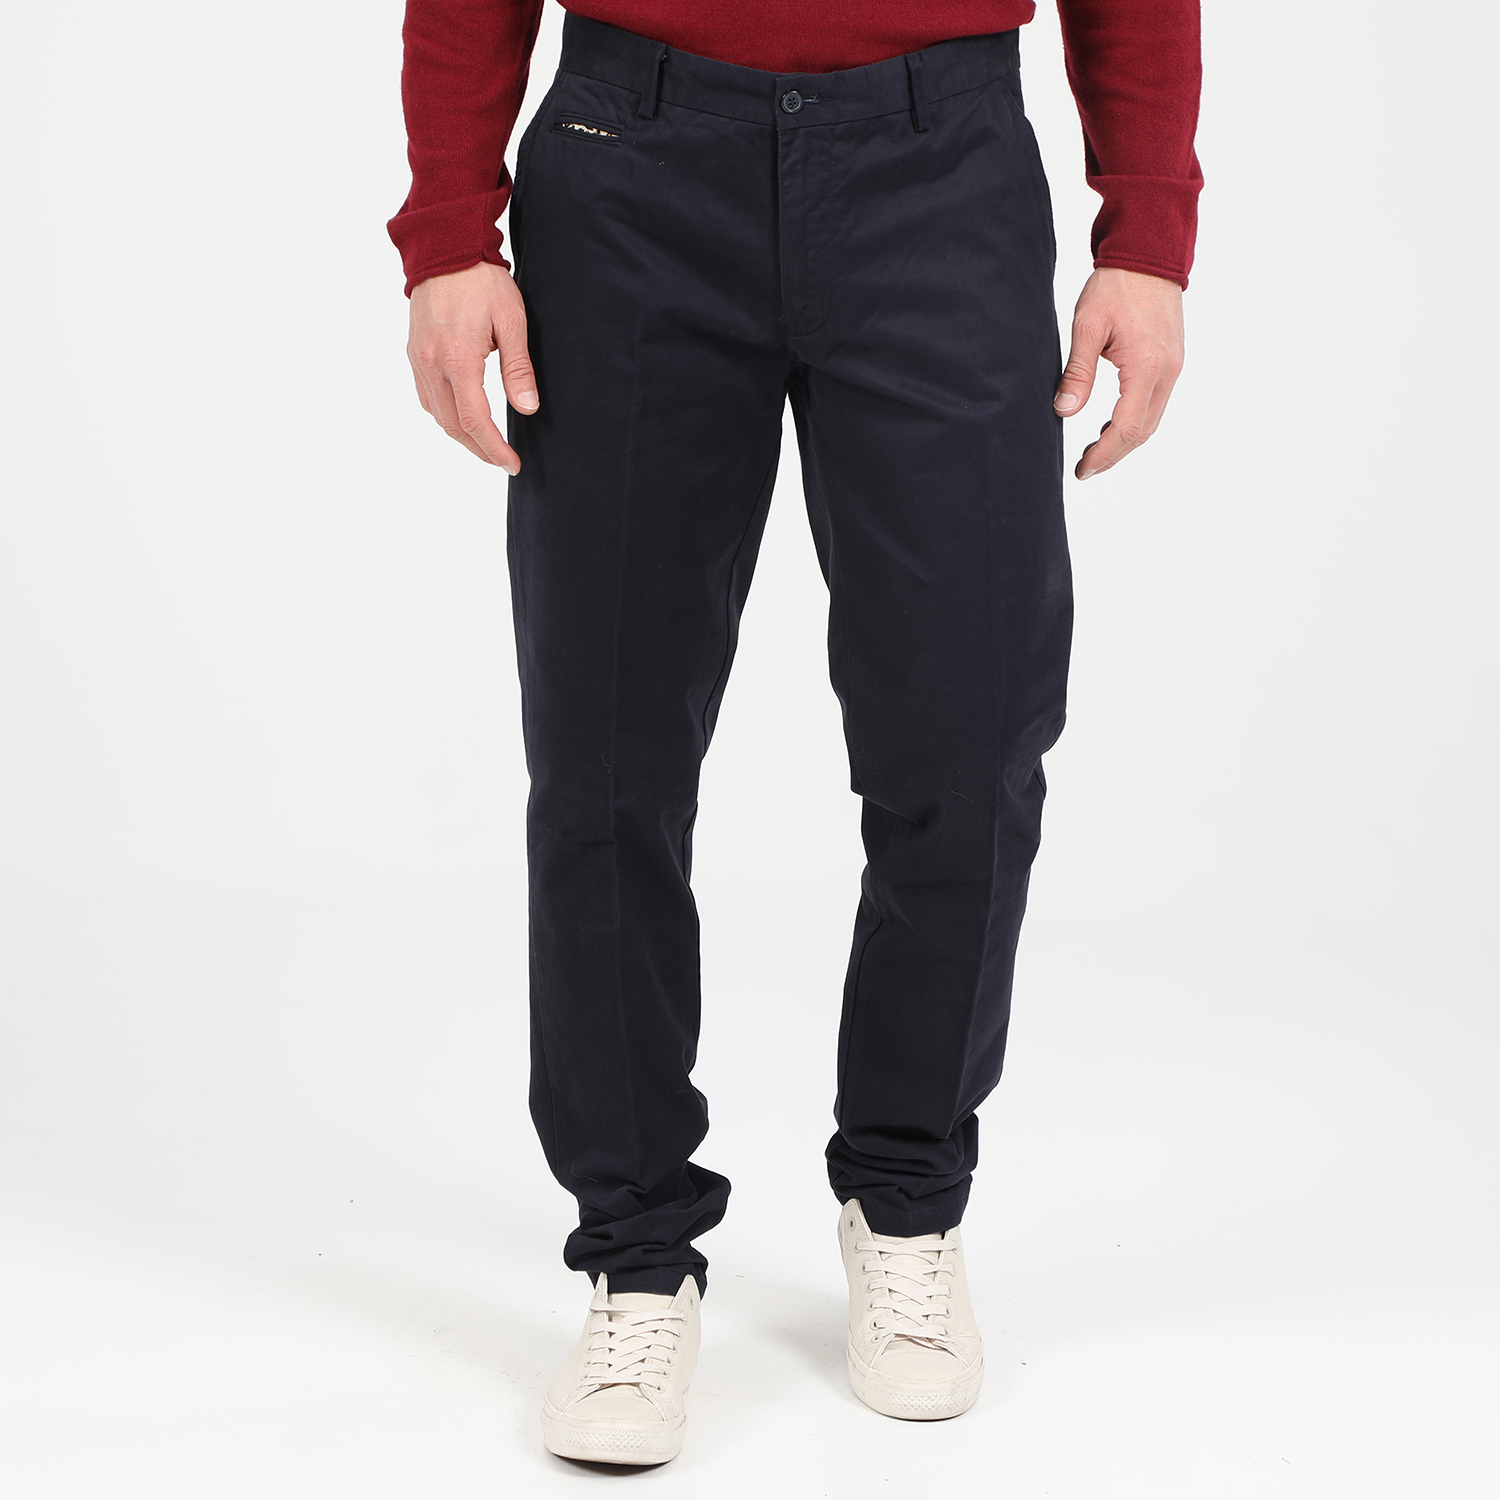 Ανδρικά/Ρούχα/Παντελόνια/Chinos MARTIN & CO - Ανδρικό chino παντελόνι MARTIN & CO REG. CHINOS μπλε